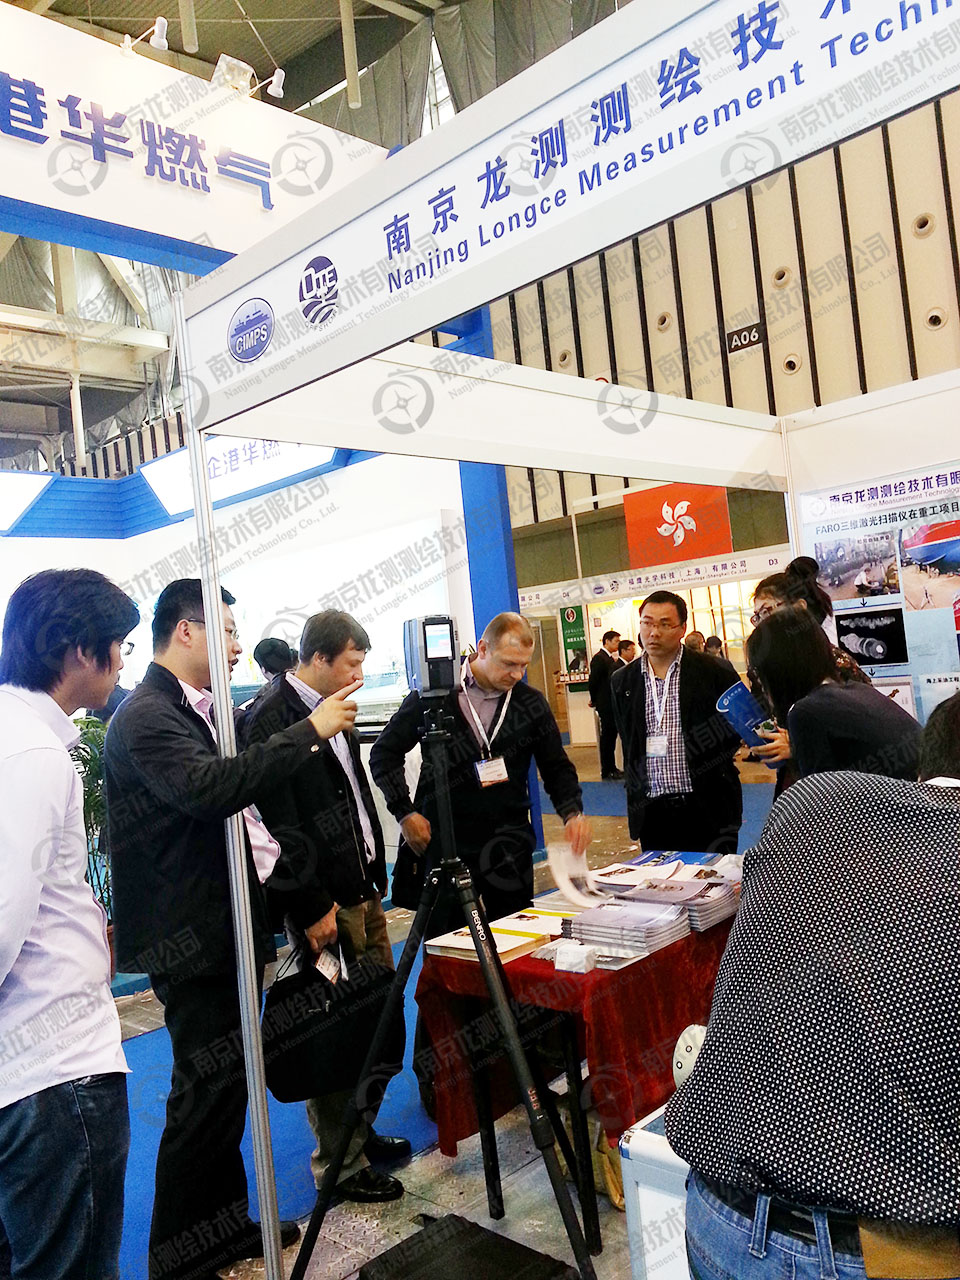 南京龙测公司参加2014年“中船展”、“海工展”